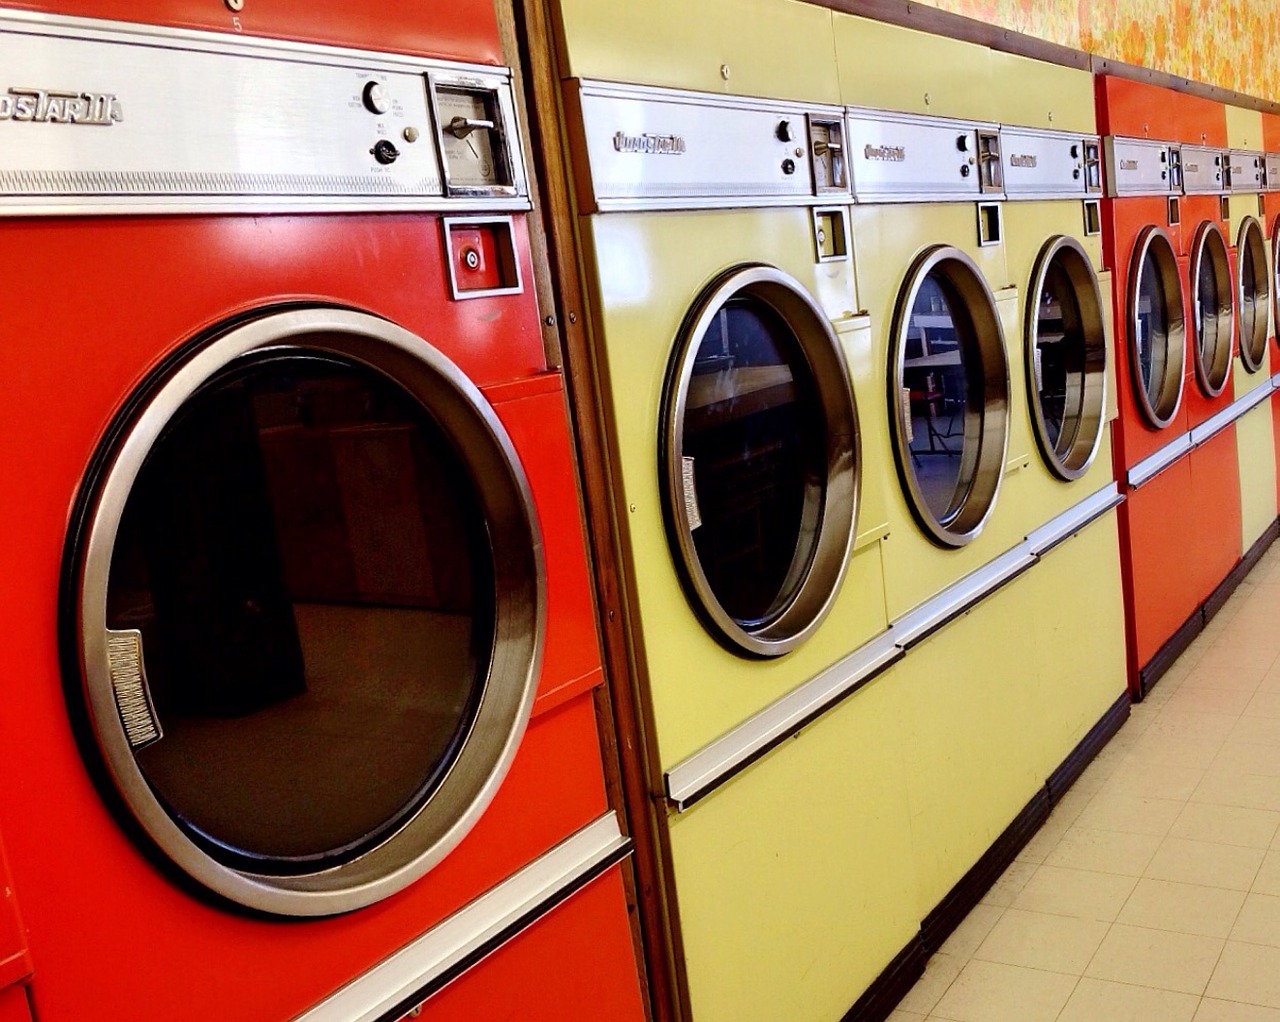 laundromat washer dryer free photo